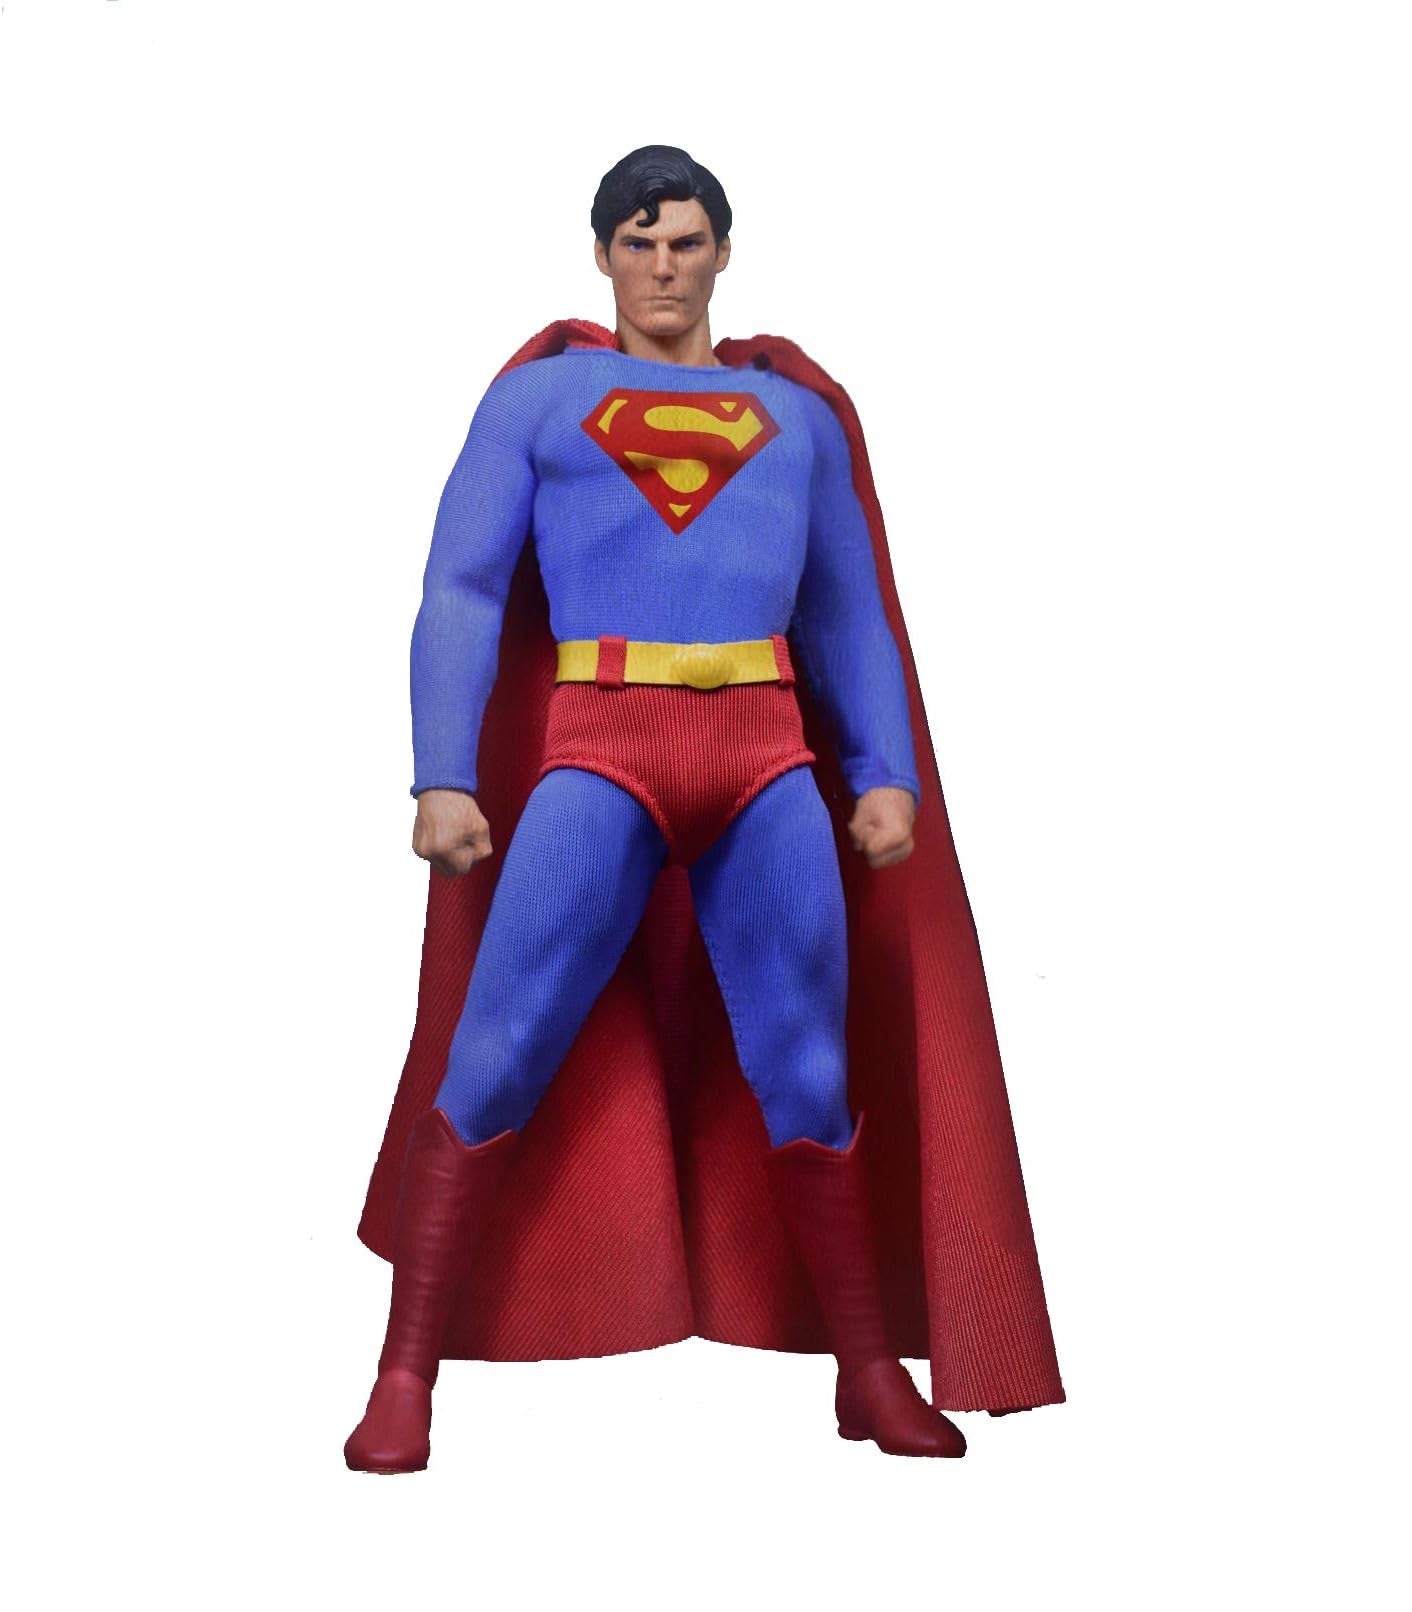 Mezco Toyz One:12 Collective: DC Comics Superman (1978) Exclusive Action Figure